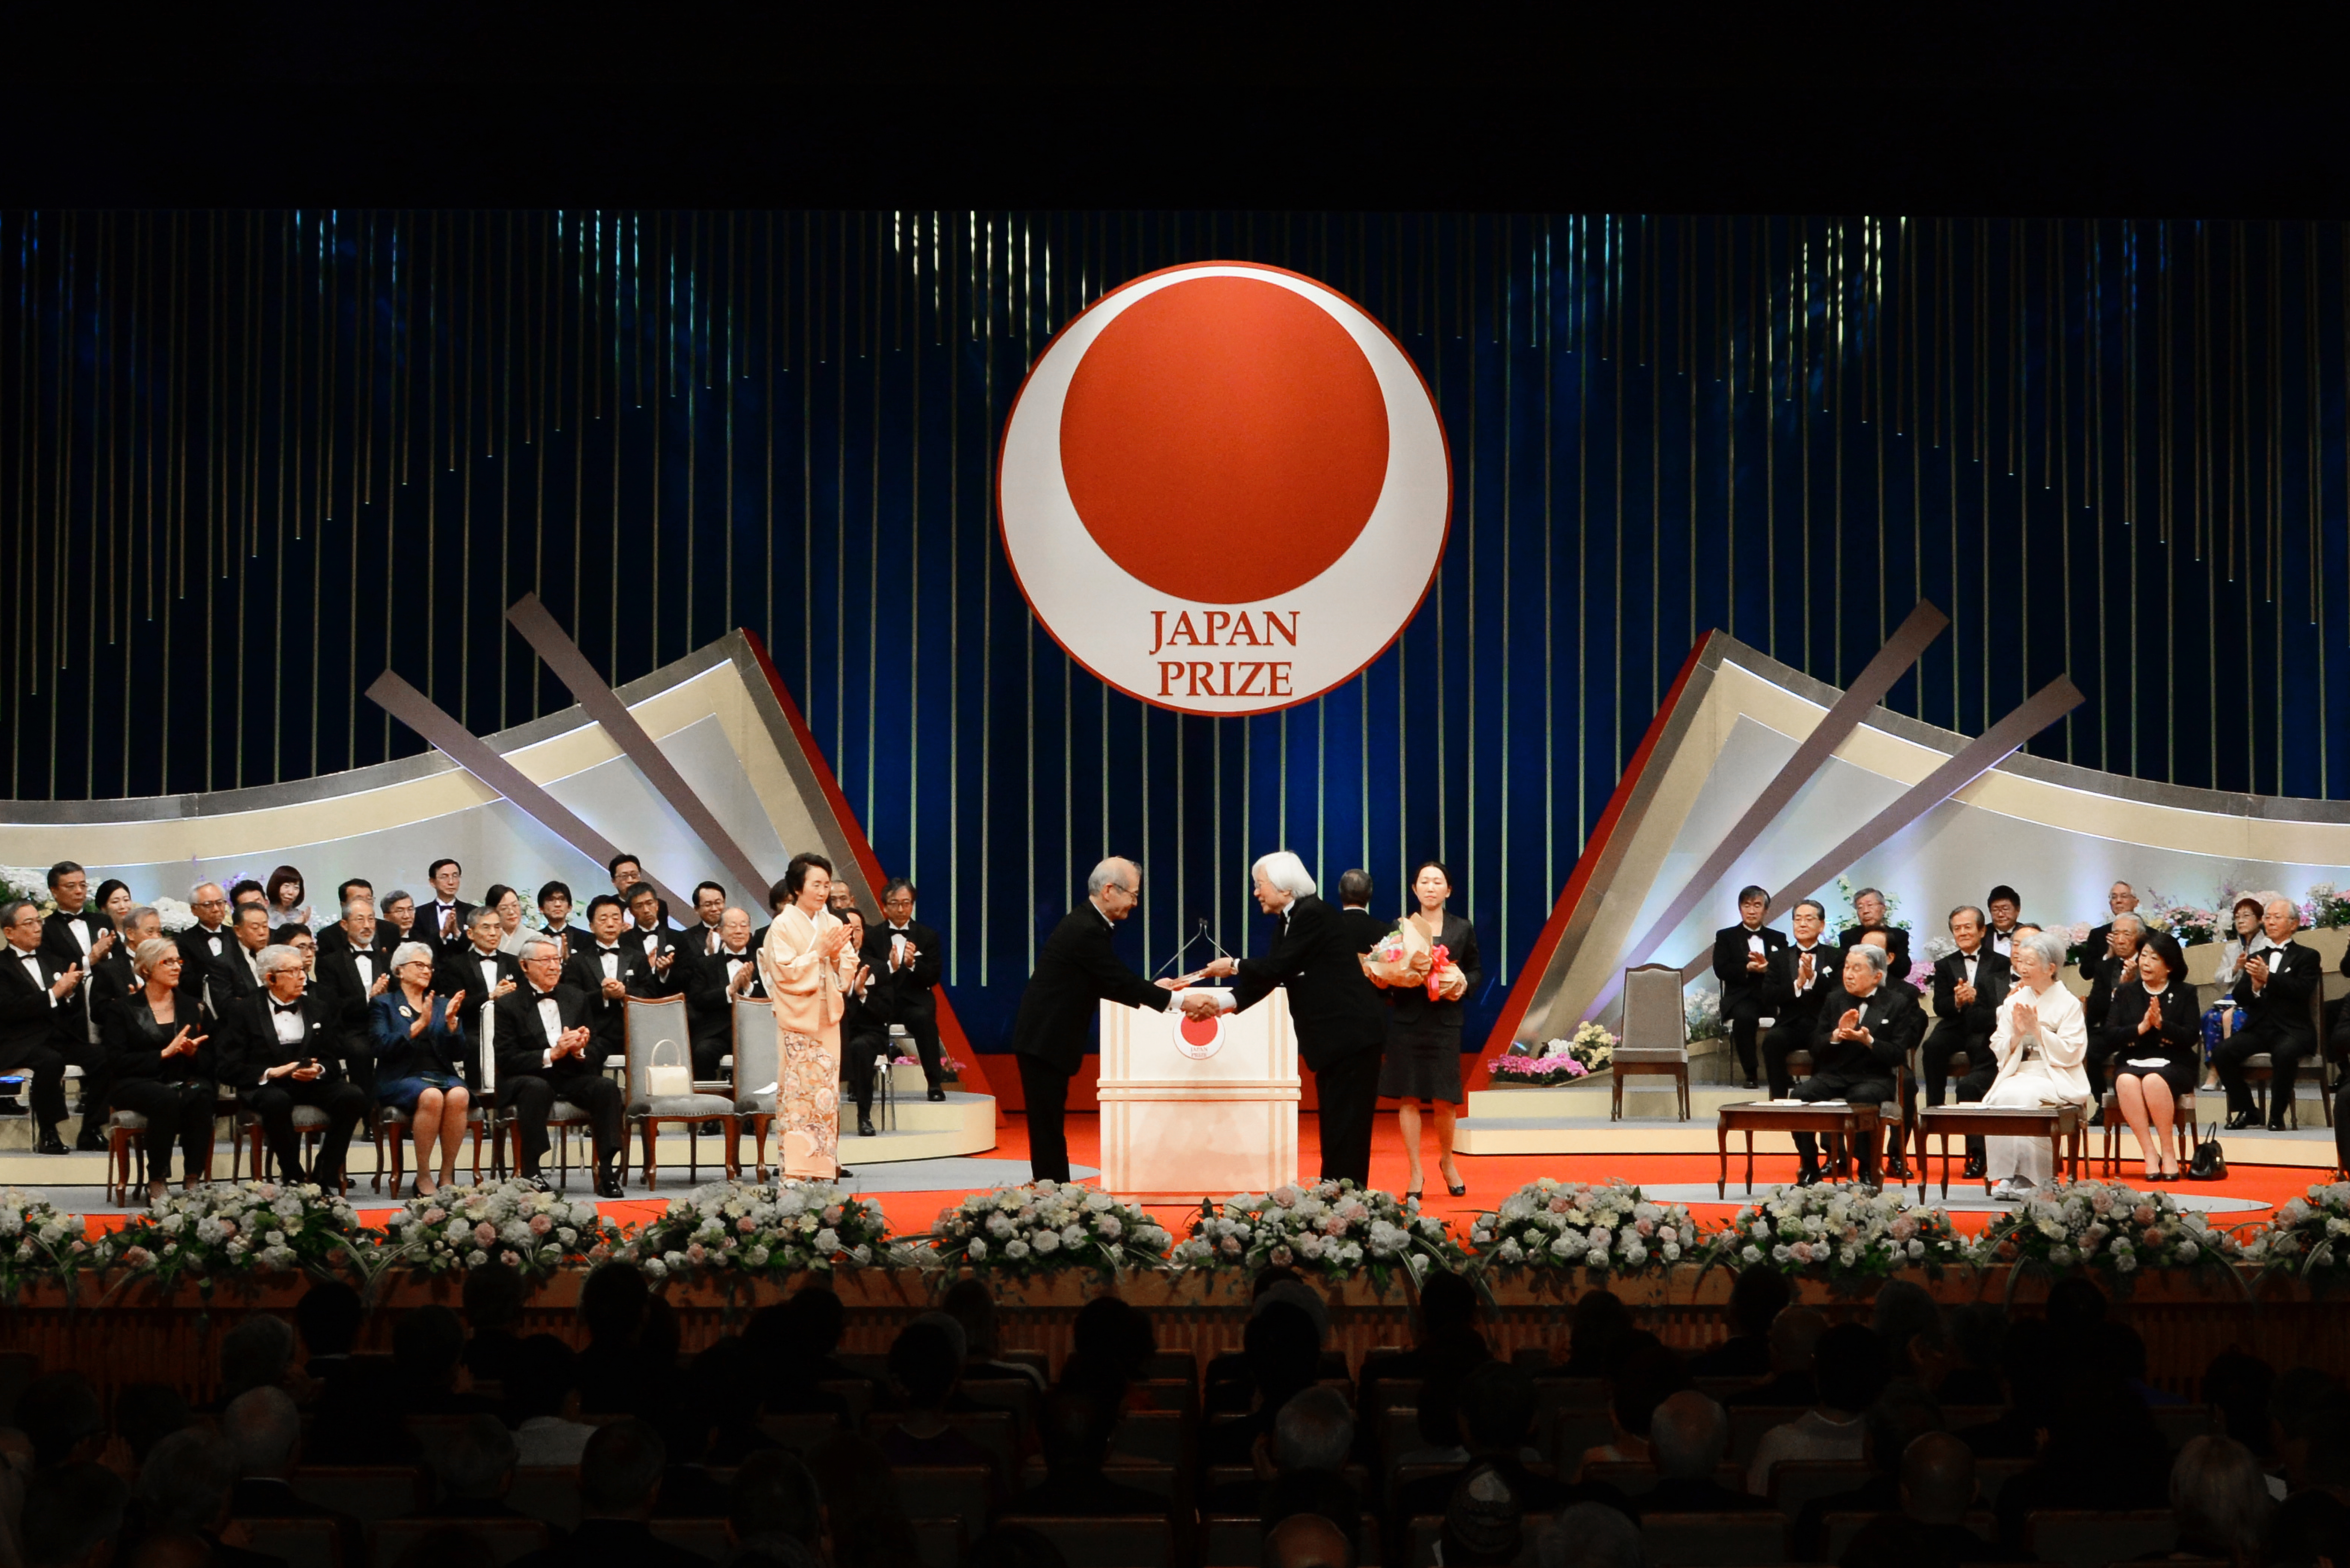 吉野彰(Akira Yoshino)获得了日本奖的奖项。”title=